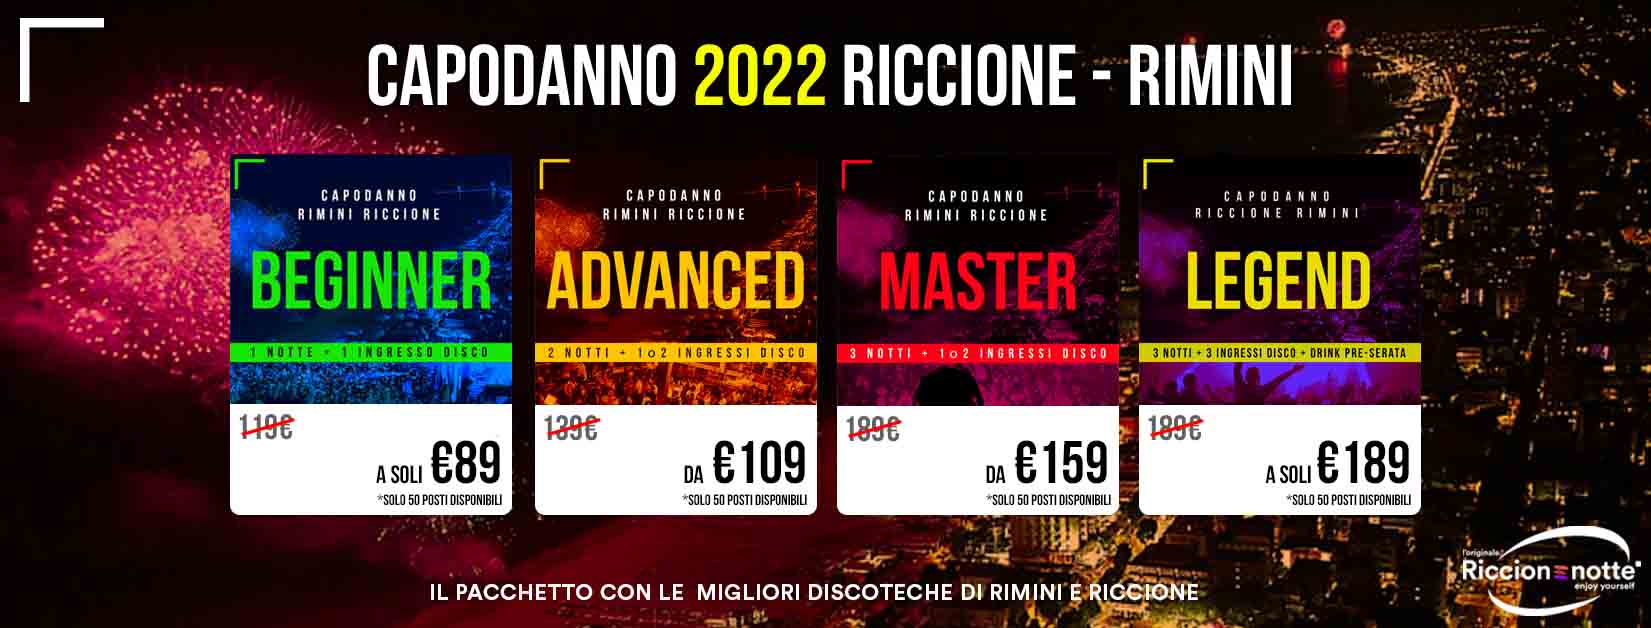 Capodanno 2022 Riccione Rimini Copertina Prezzi Con Offerta